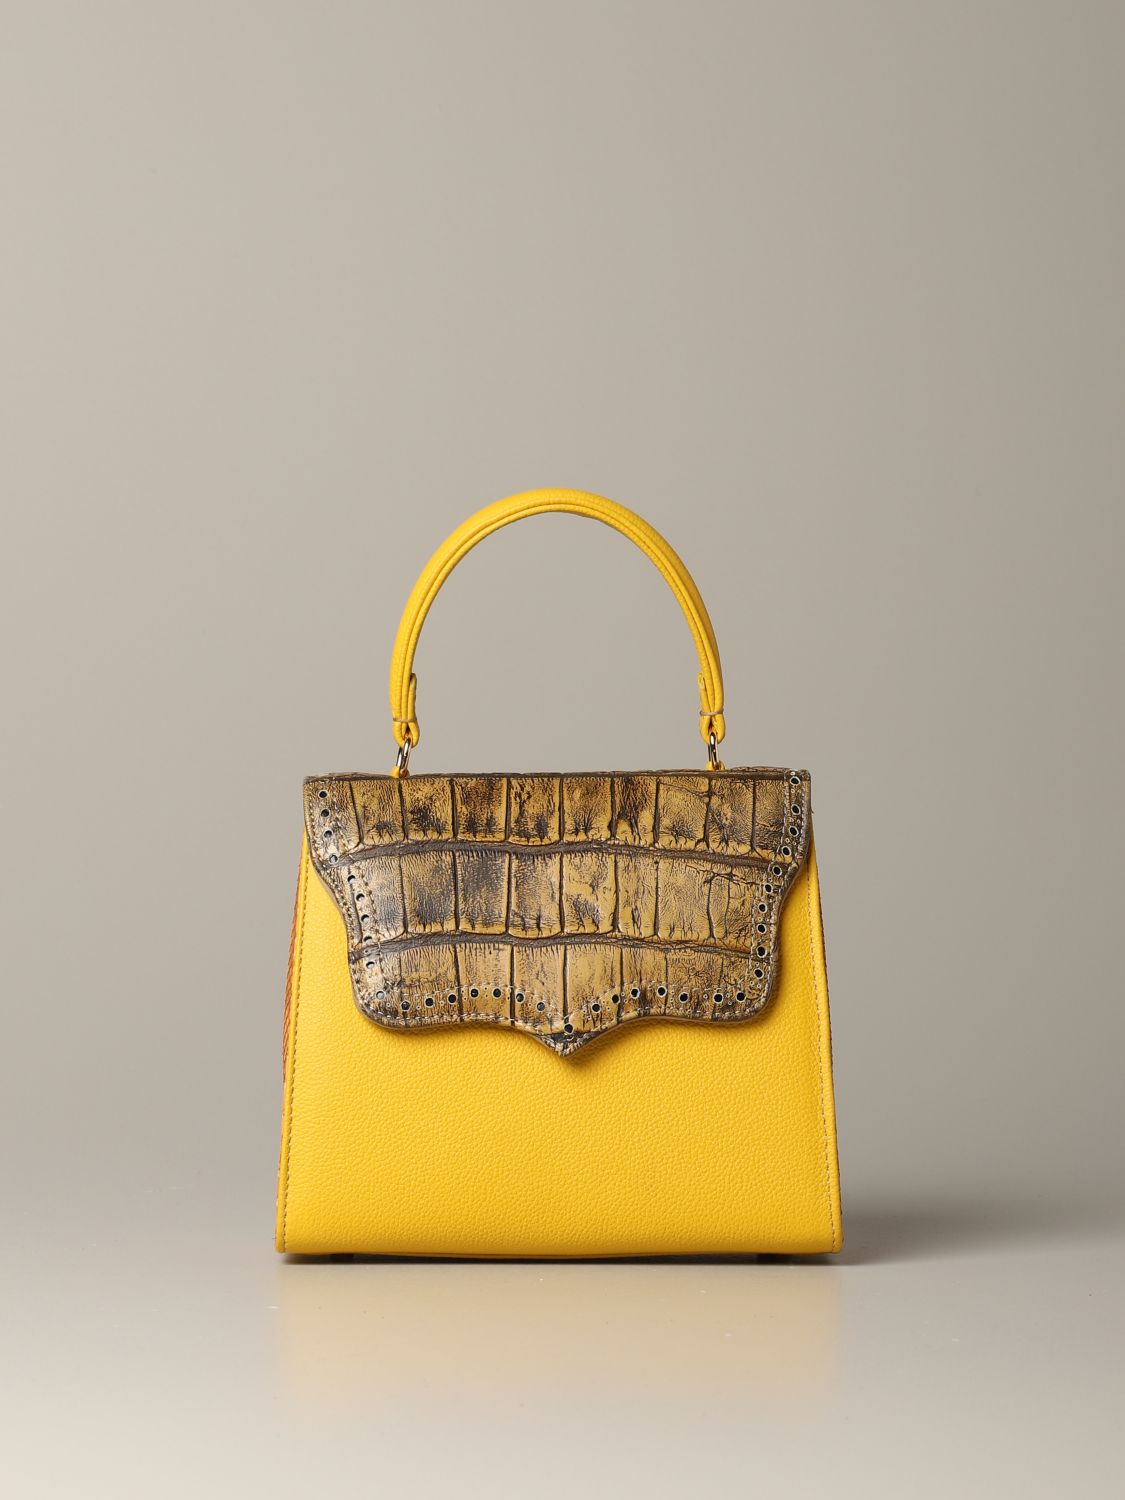 Tari' Rural Design Outlet: mini bag for woman - Yellow | Tari' Rural ...